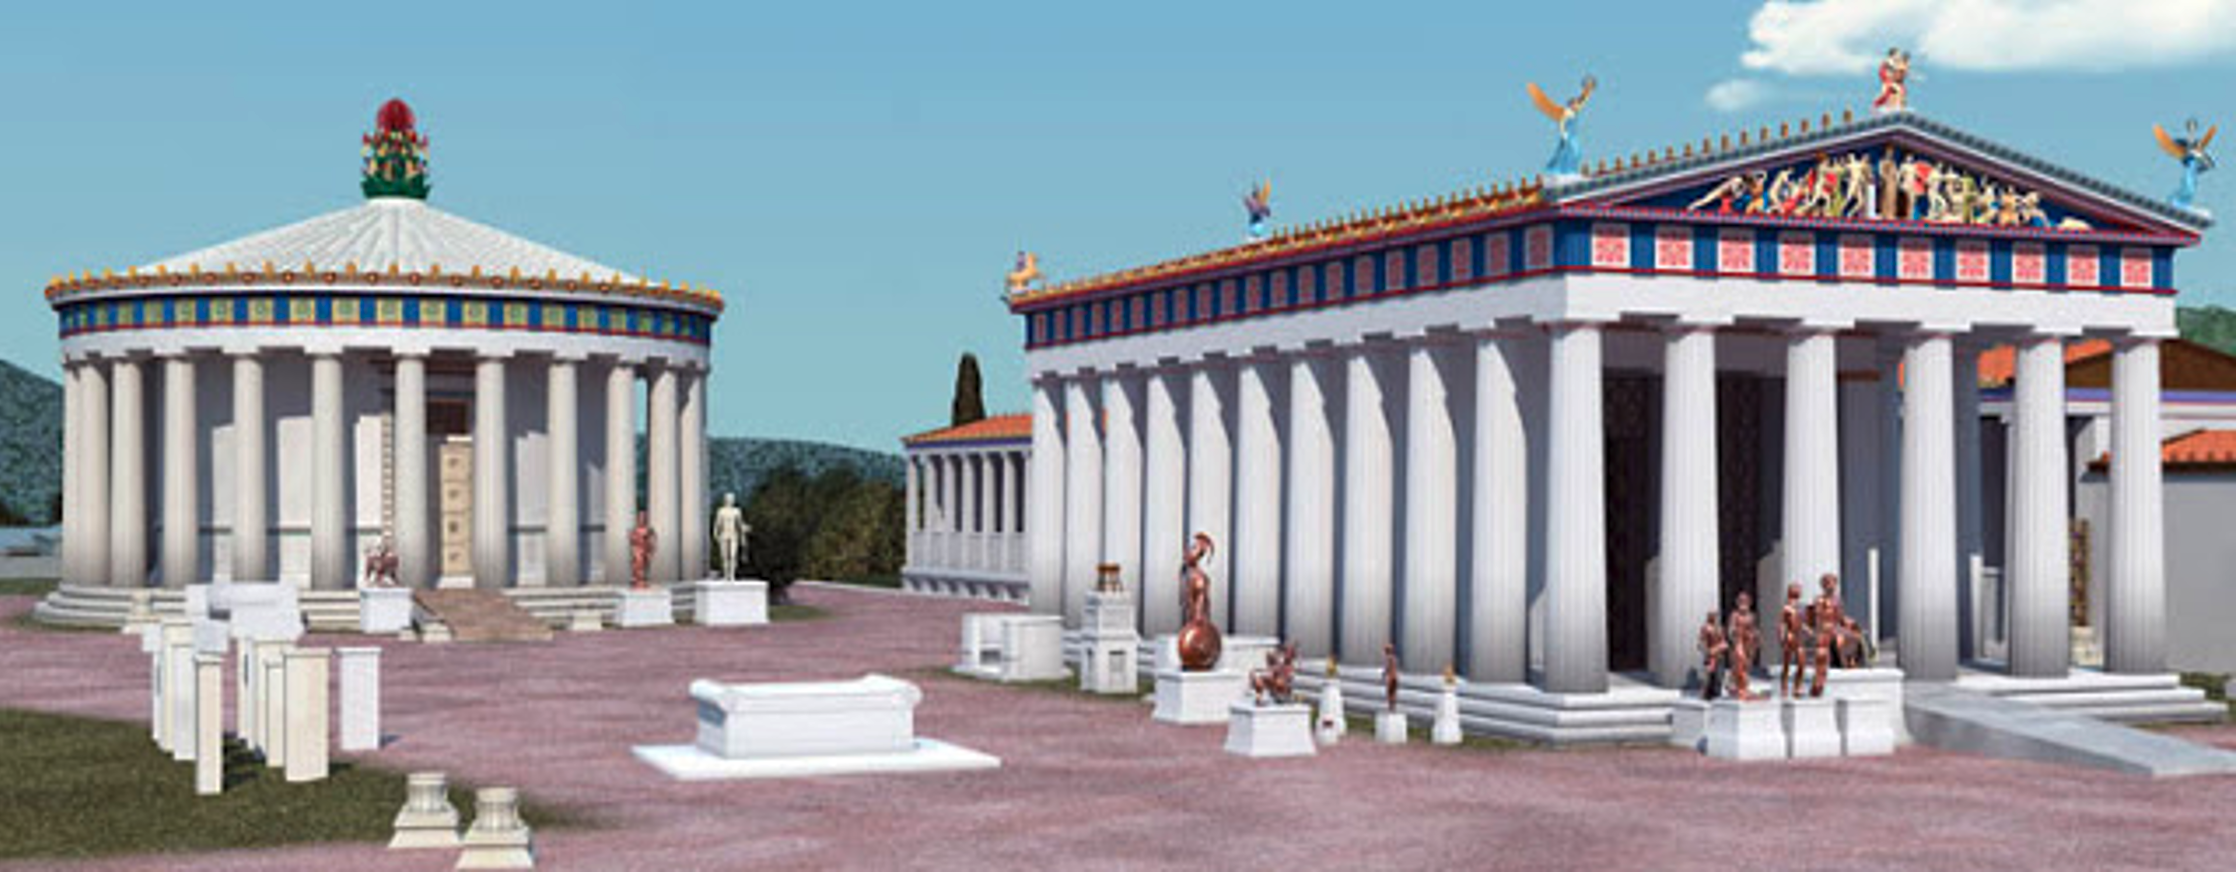 Ασκληπιείο Επιδαύρου, το σημαντικότερο θεραπευτικό κέντρο όλου του  ελληνικού και ρωμαϊκού κόσμου.